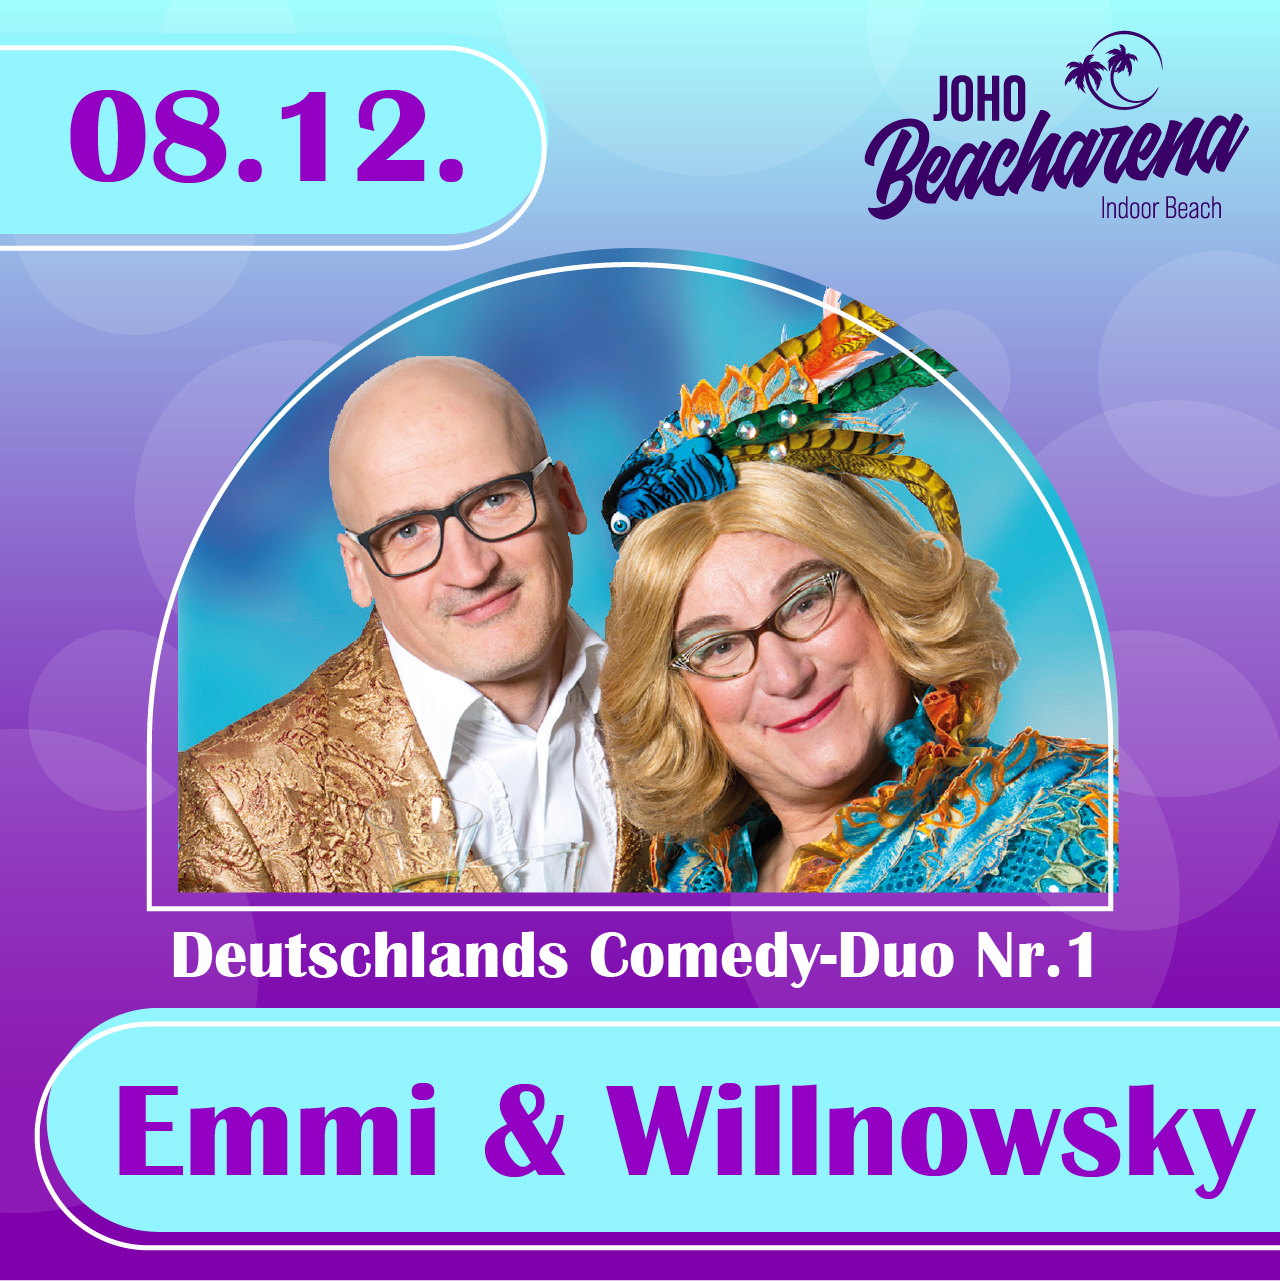 Emmi & Willnowsky